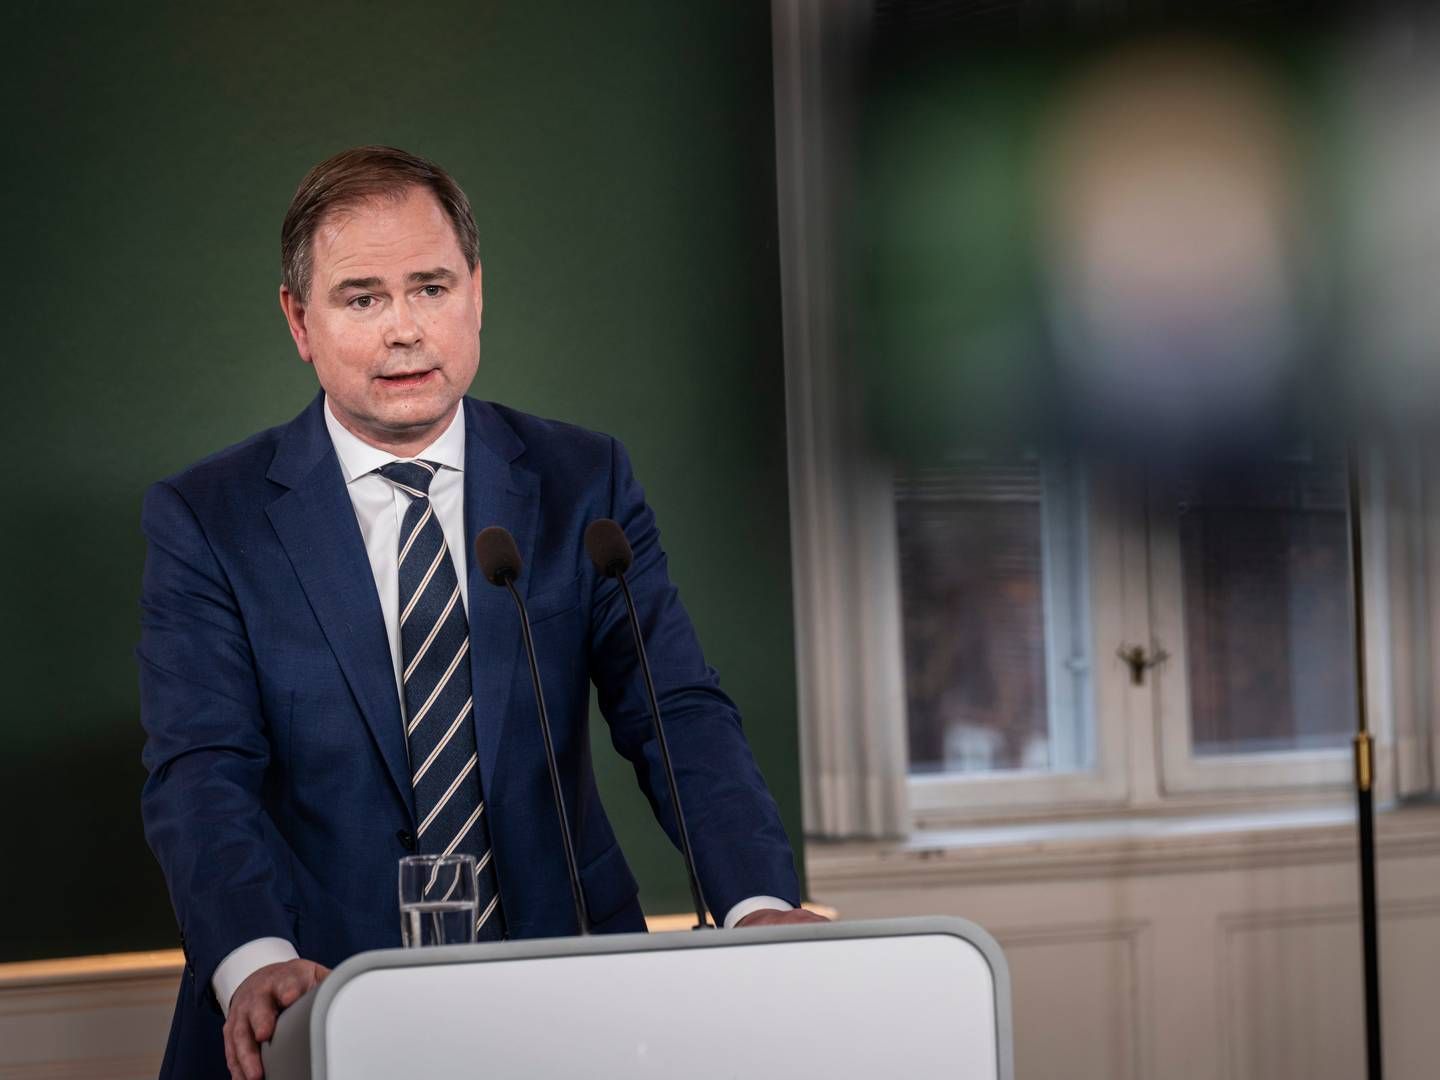 Finansministeren Nicolai Wammen (S) fremlagde tirsdag regeringens 2030-plan i Finansministeriet. | Foto: Emil Nicolai Helms